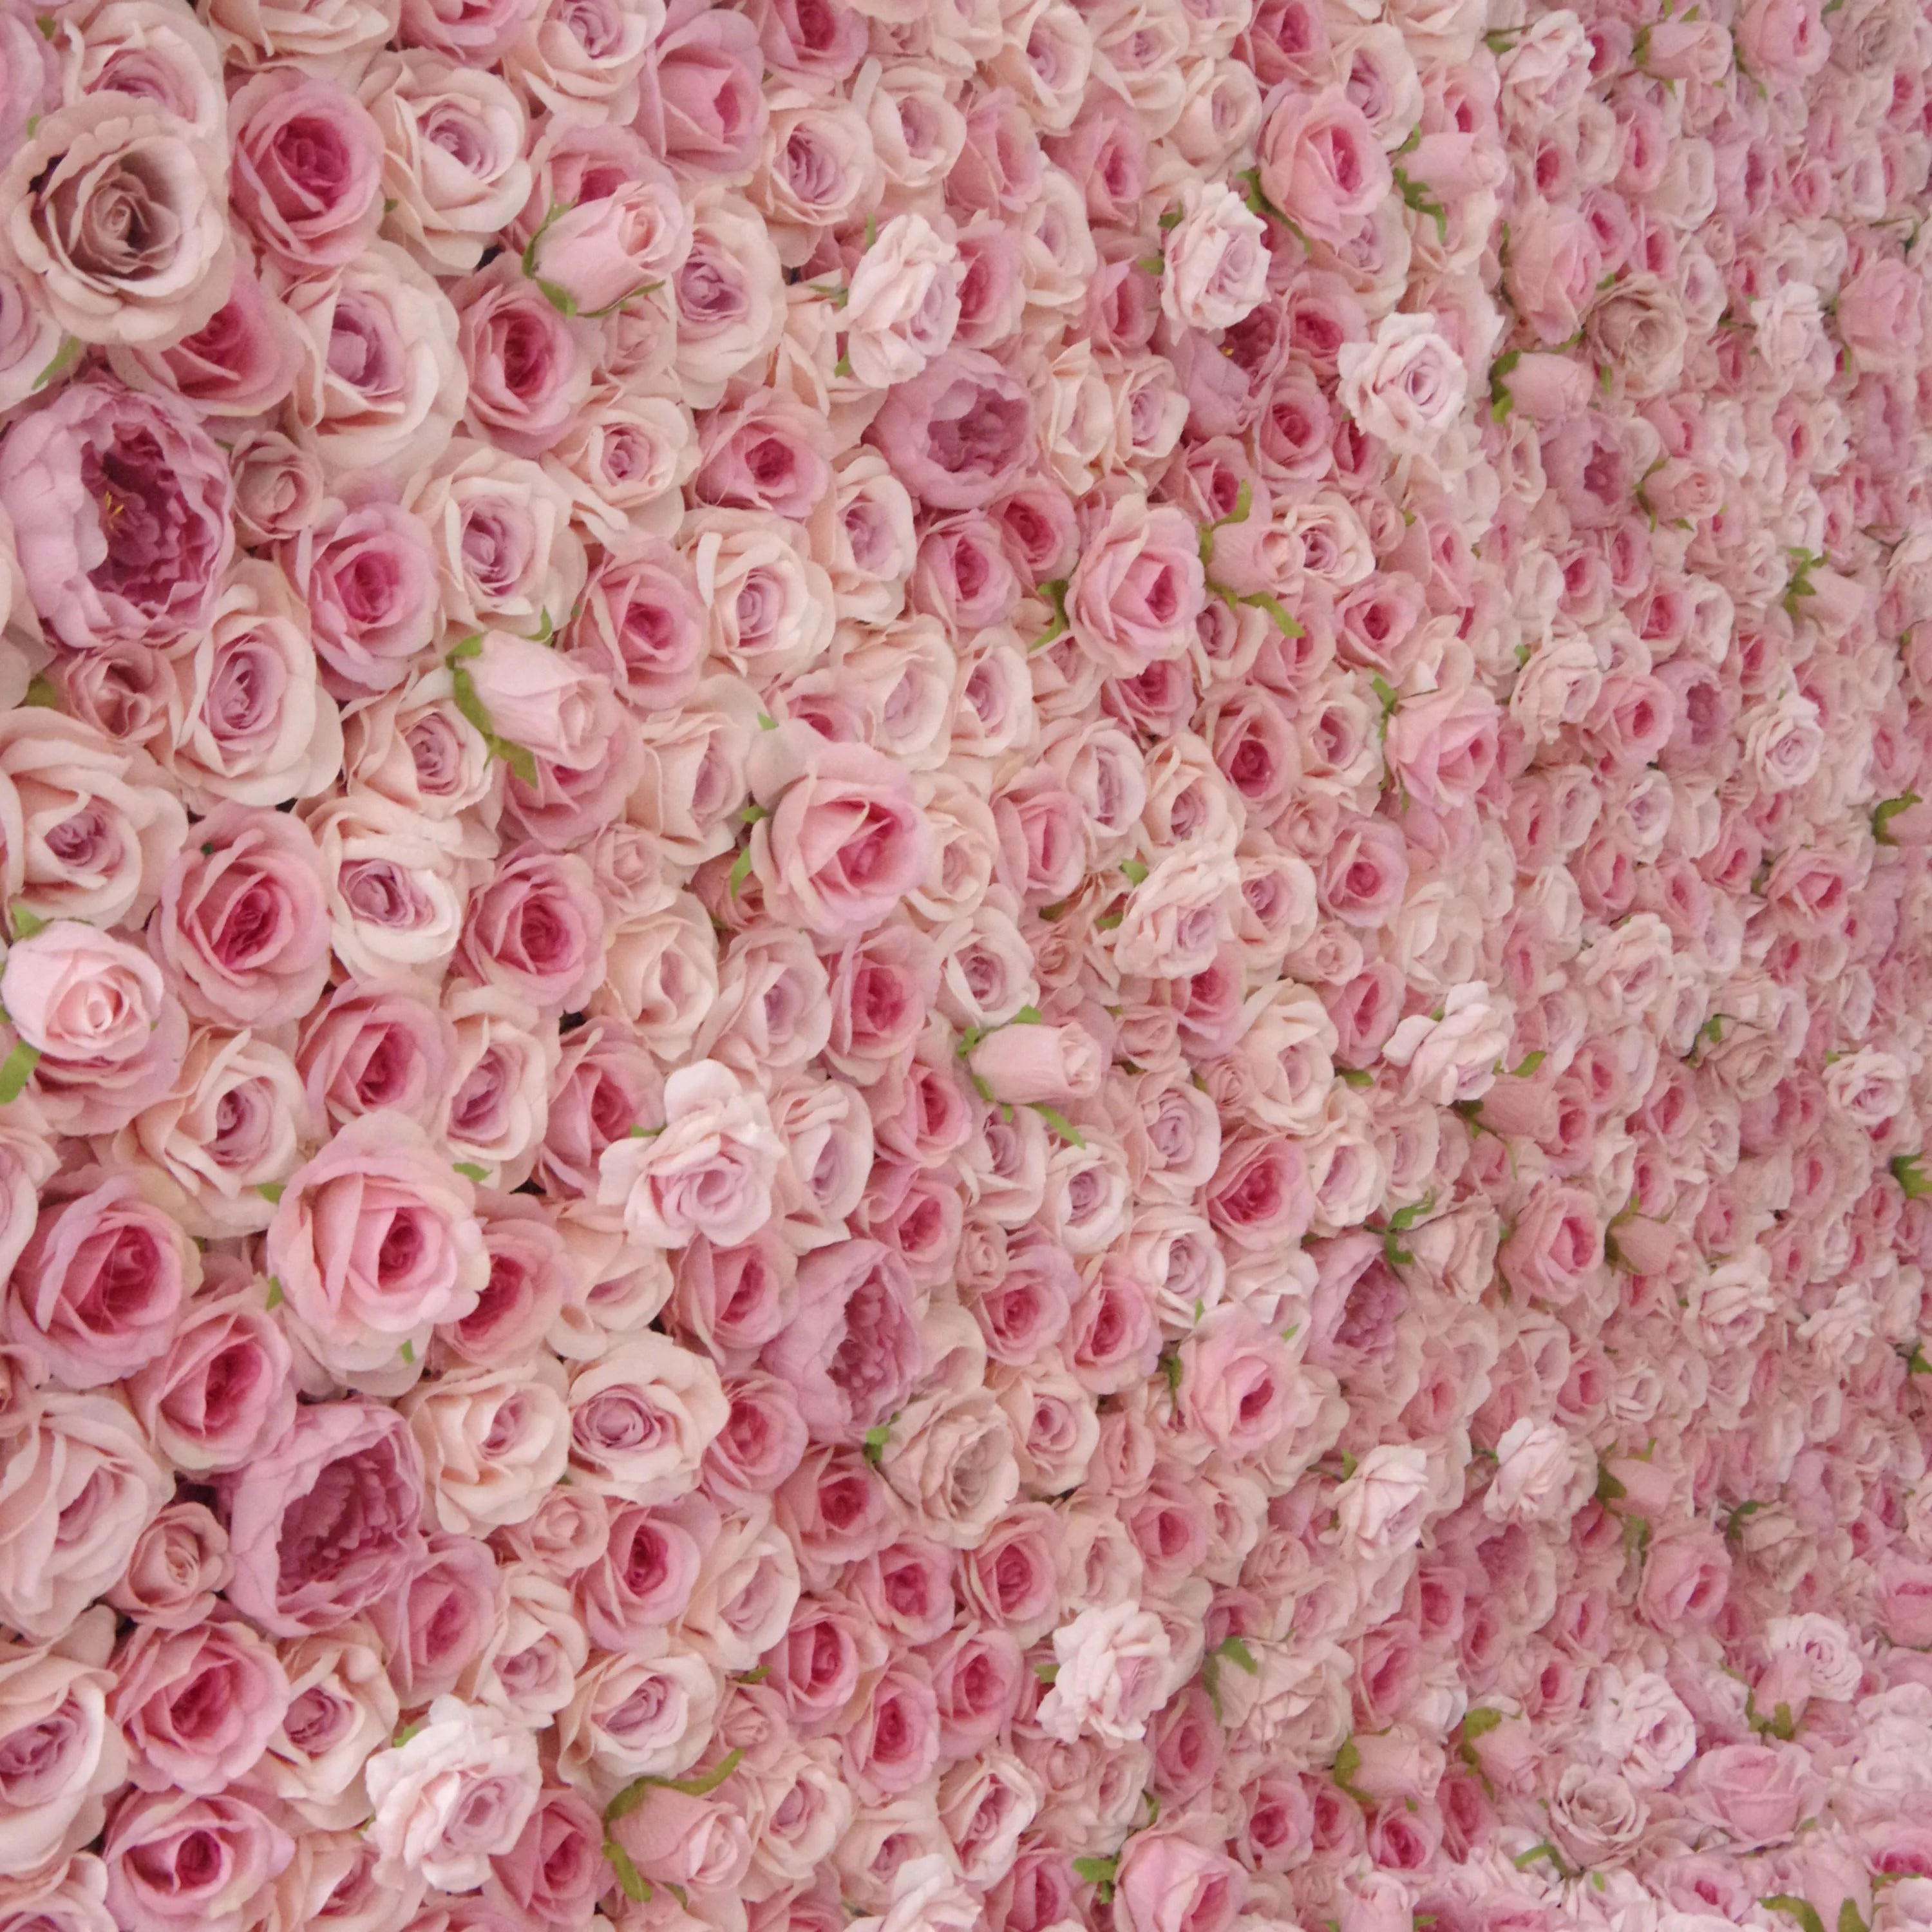 زهور فالار لفة حتى الزهور النسيج الاصطناعي الوردي الزهور مع جوهر رودي الوردي خلفية جدار الزفاف الأزهار ، ديكور حزب الأزهار ، الحدث